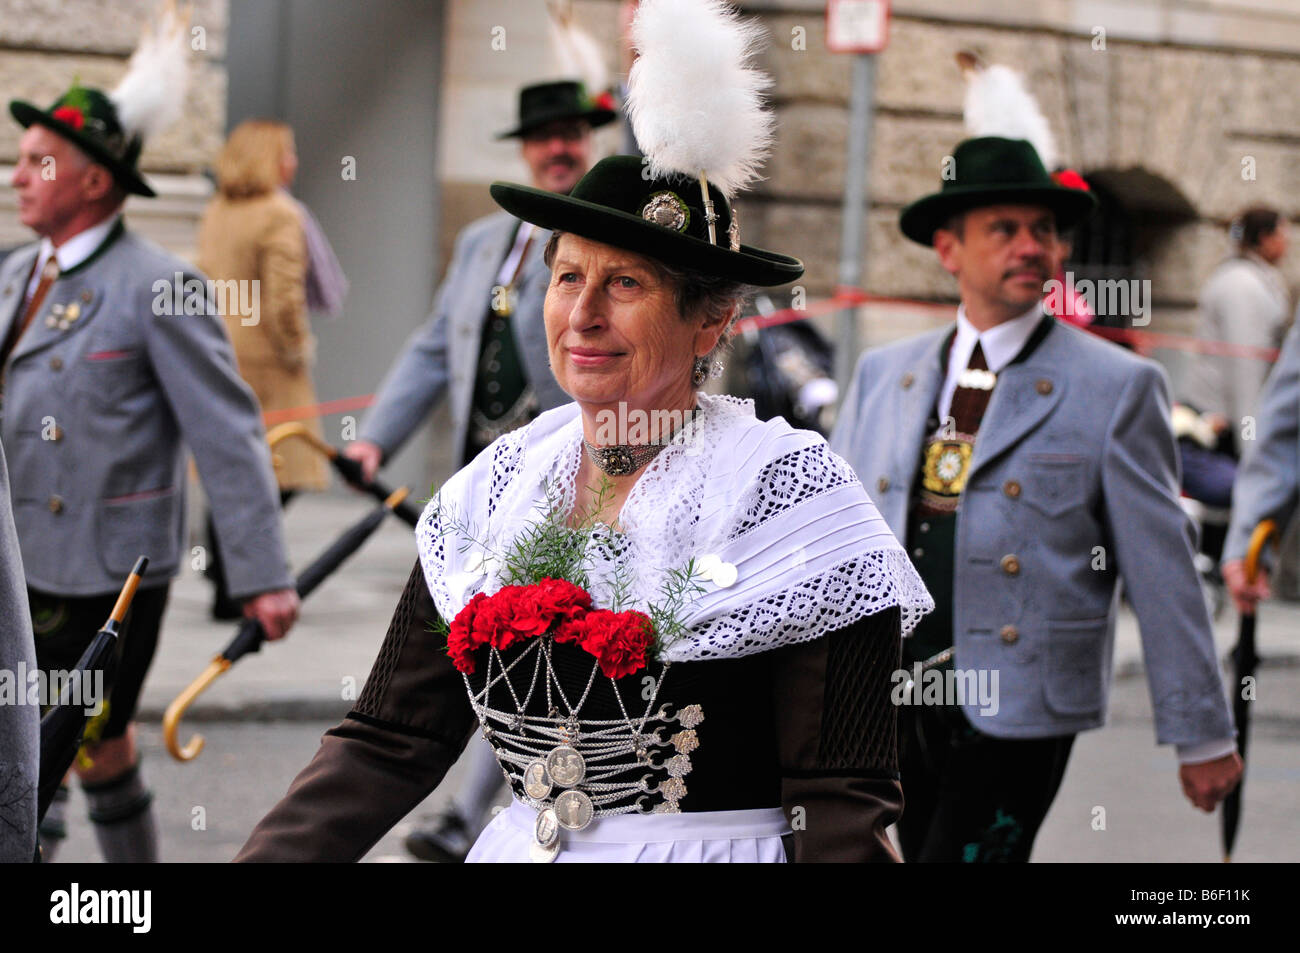 Le port de costumes traditionnels du groupe lors de la traditionnelle parade de costumes à l'Oktoberfest, Munich, Bavaria, Germany, Europe Banque D'Images